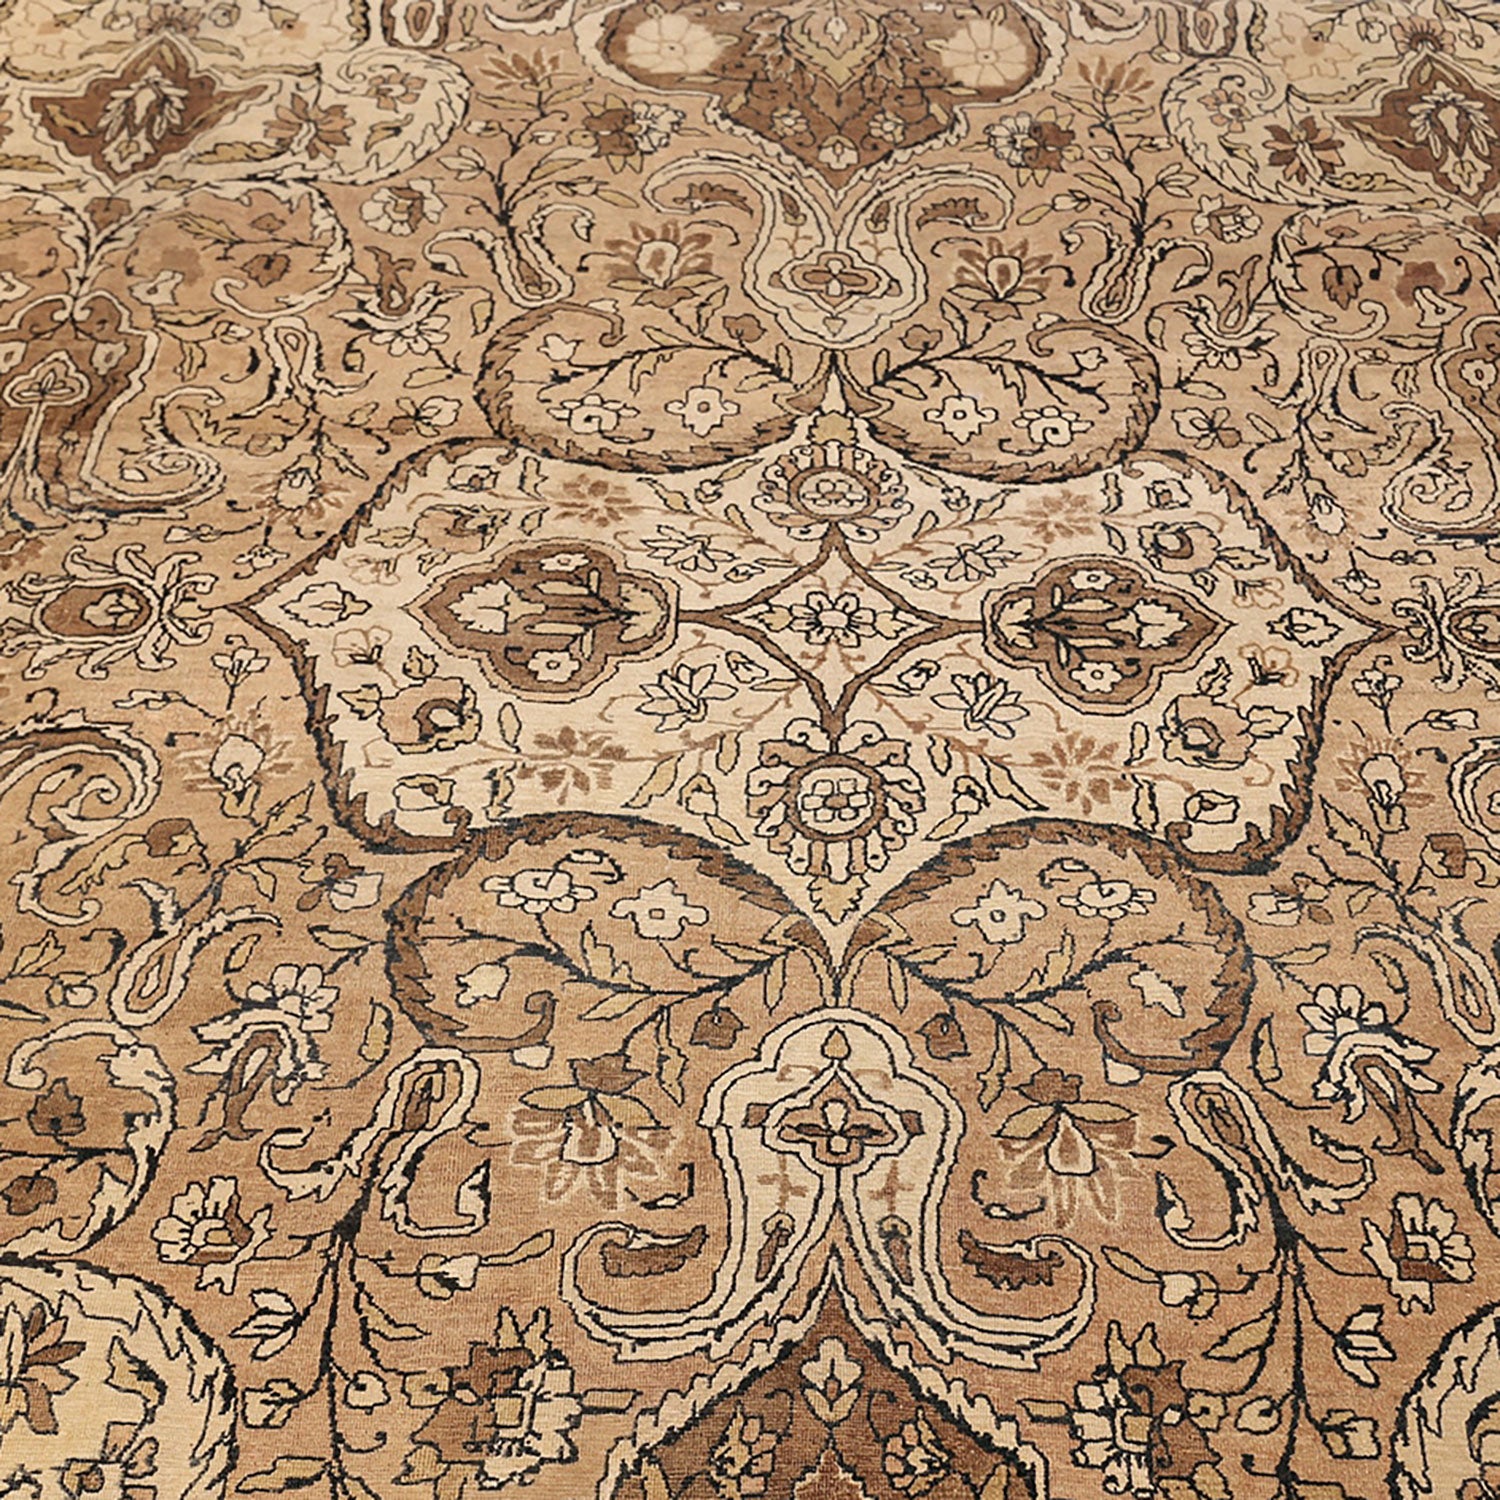 Exquisite, symmetrical floral motifs adorn a luxurious Persian-style carpet.